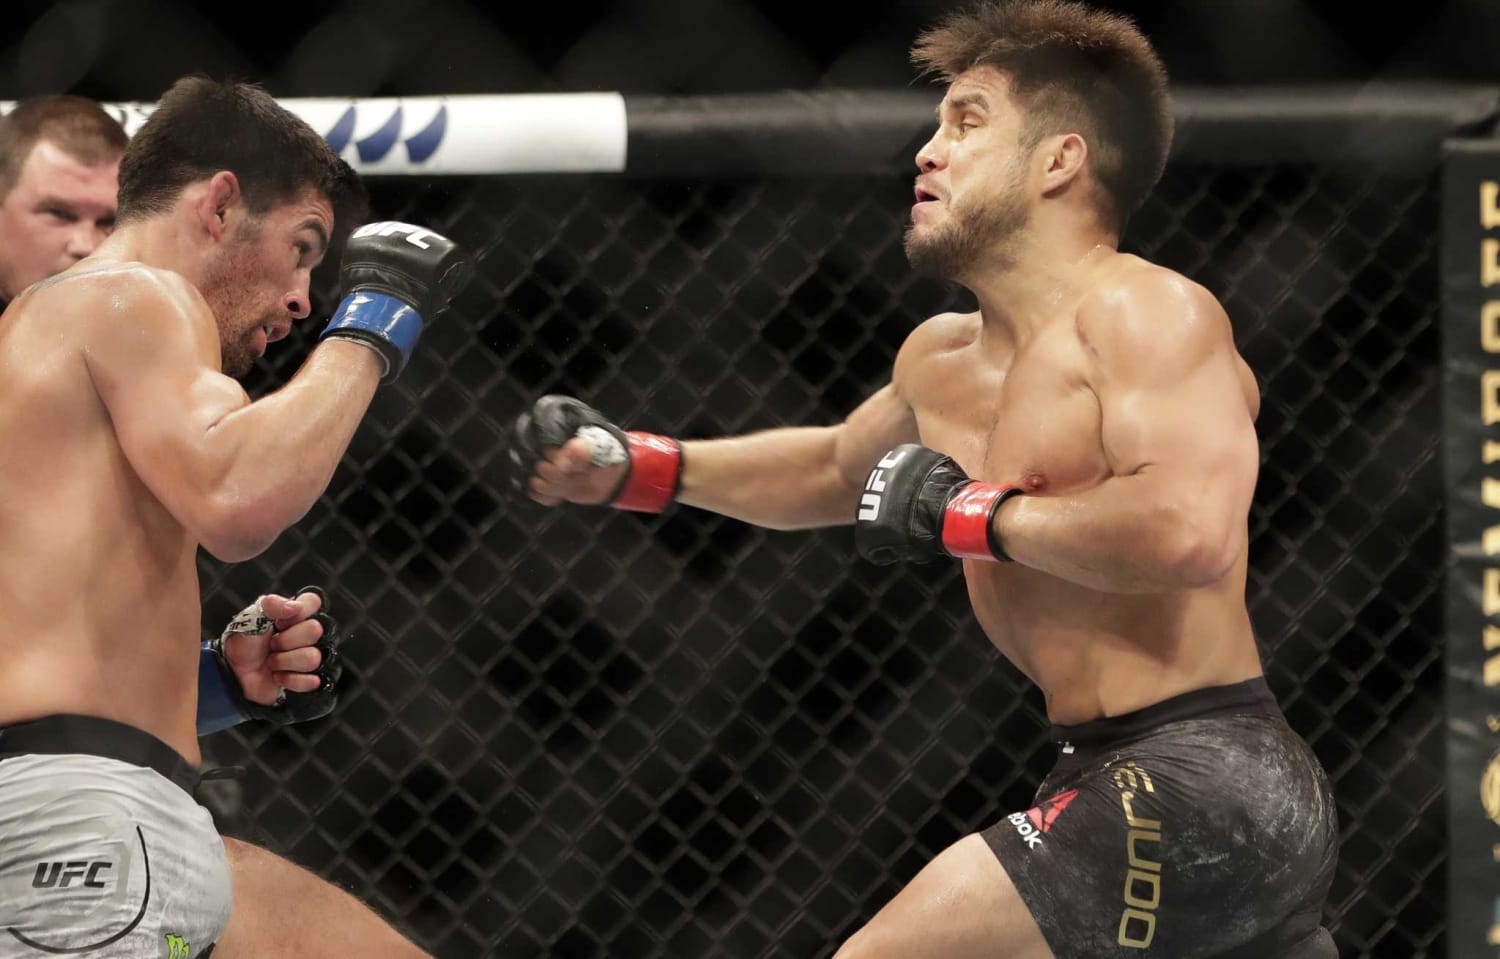 UFC 249 ushers in fan-free, mask-filled era of sports